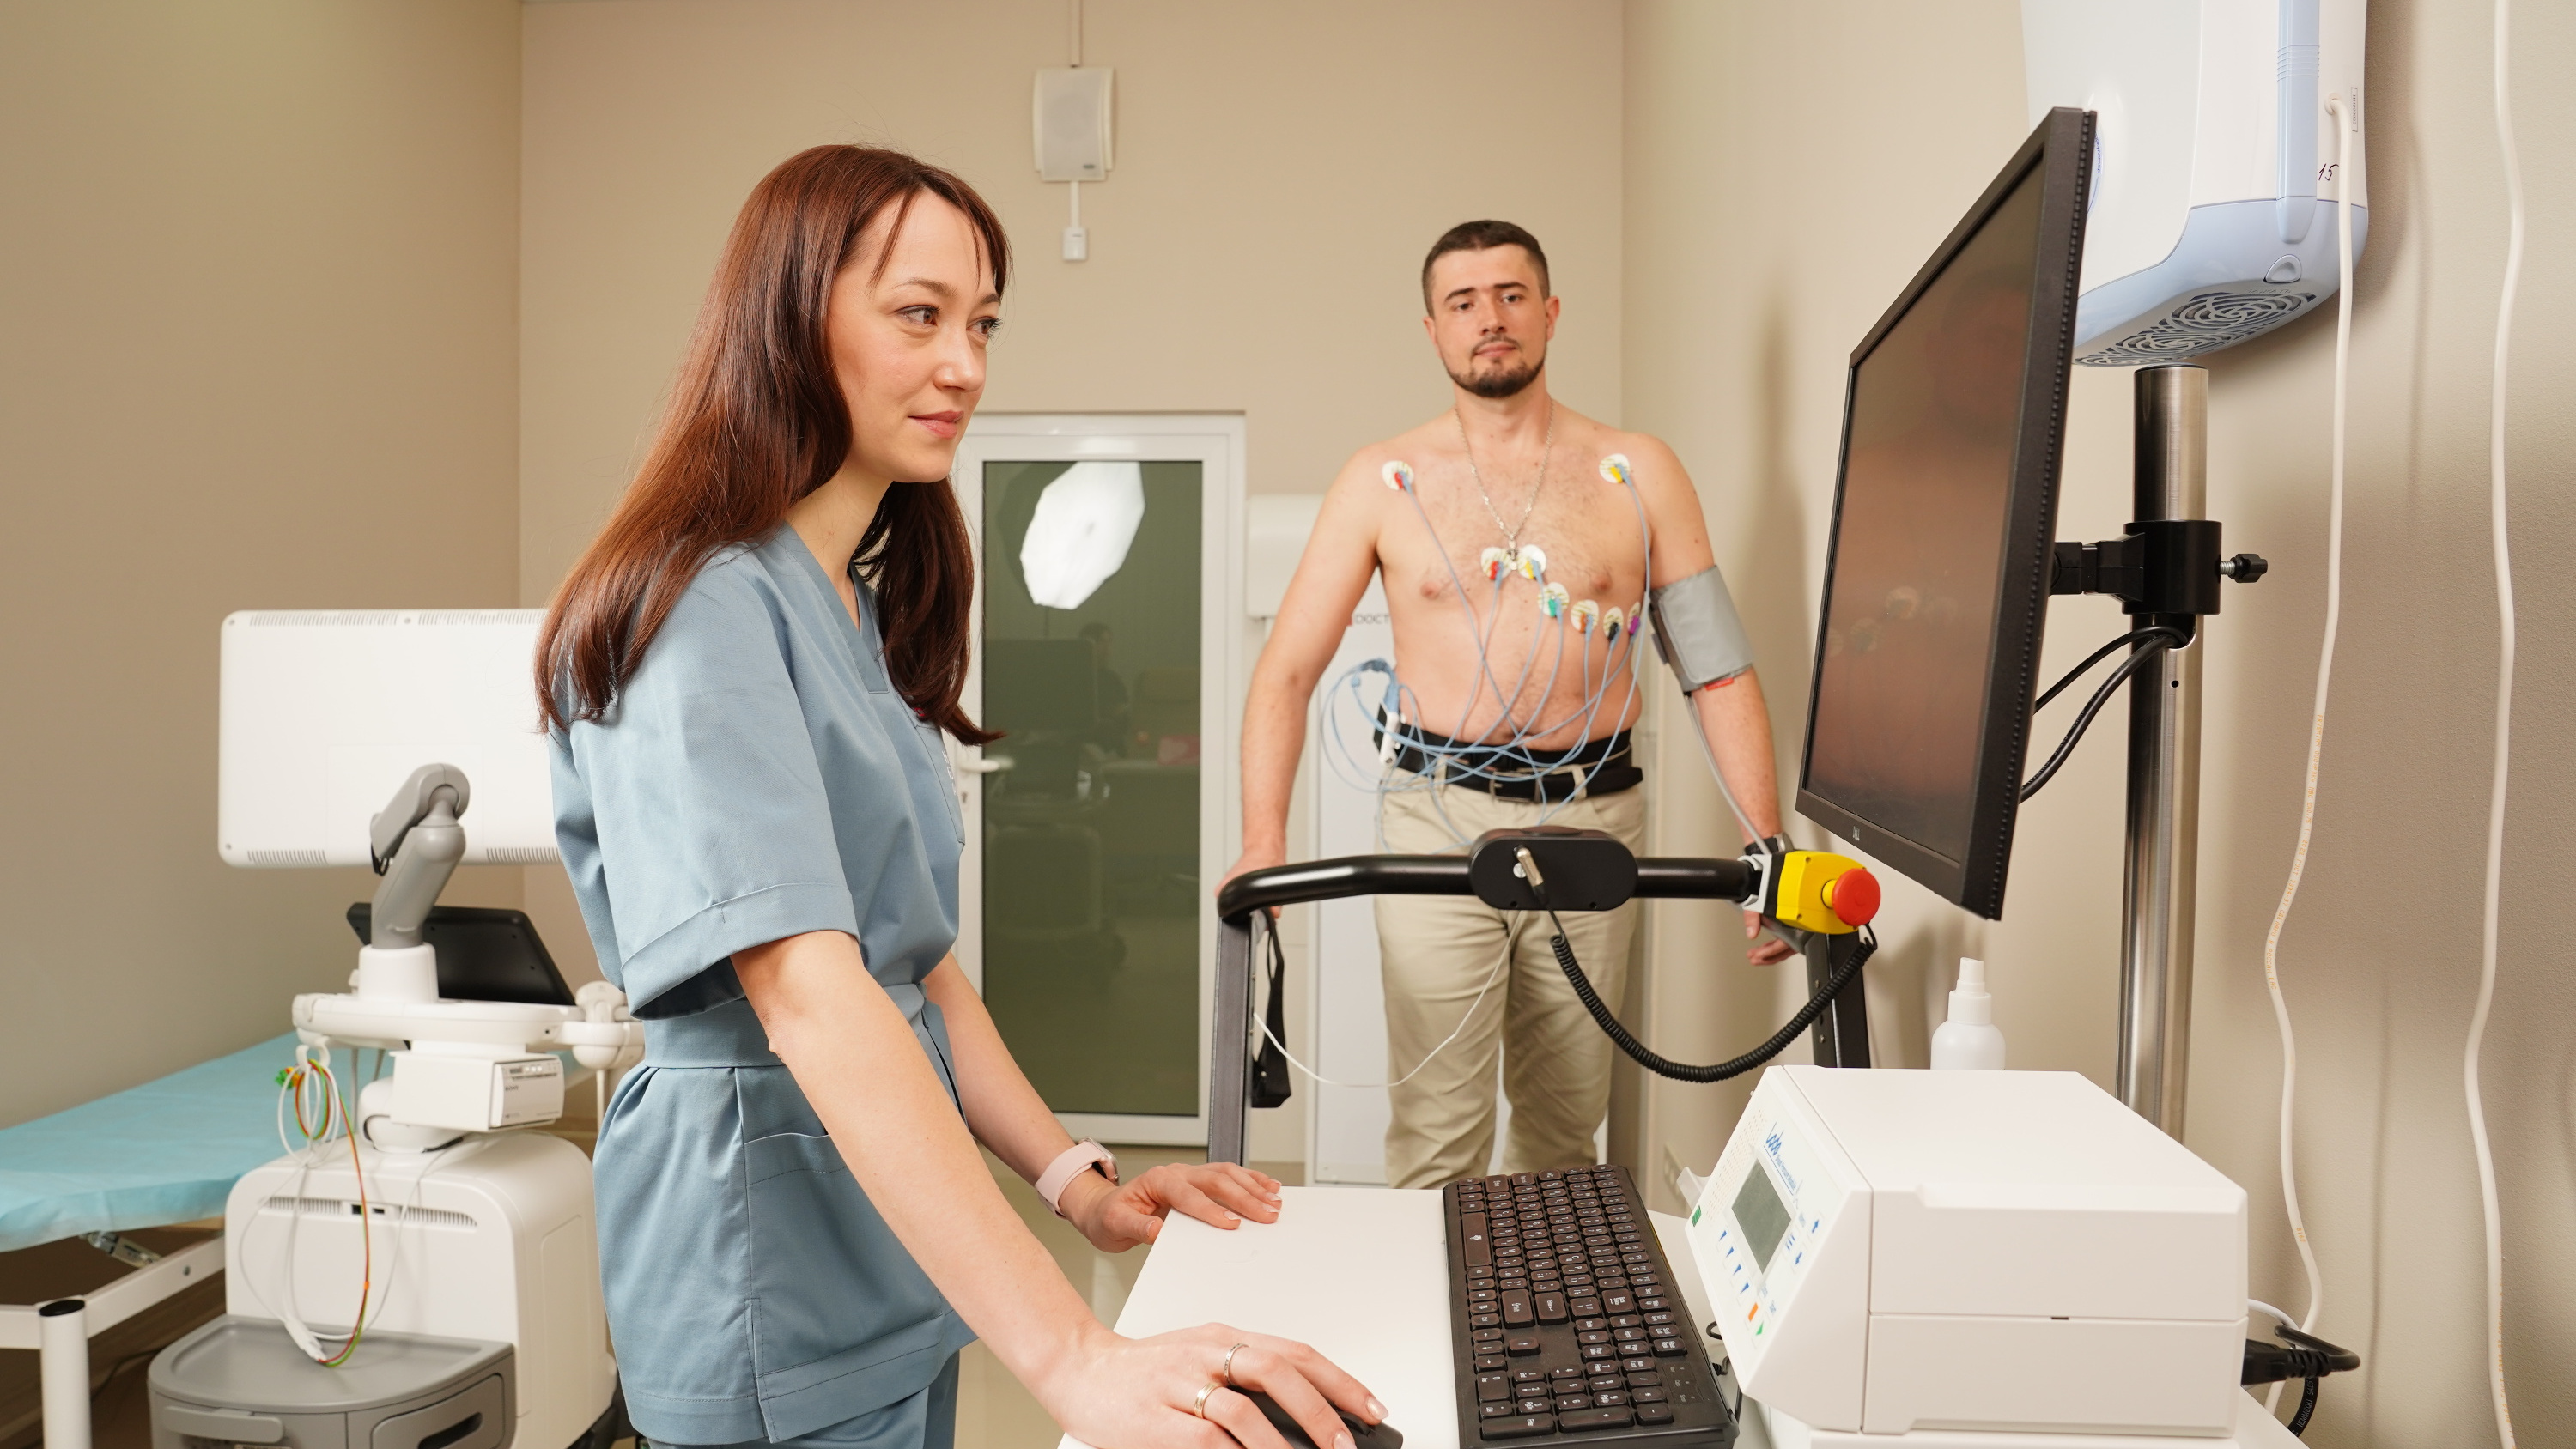 Один час может спасти целую жизнь: в Краснодаре заработал кардиоцентр с личными помощниками для пациентов